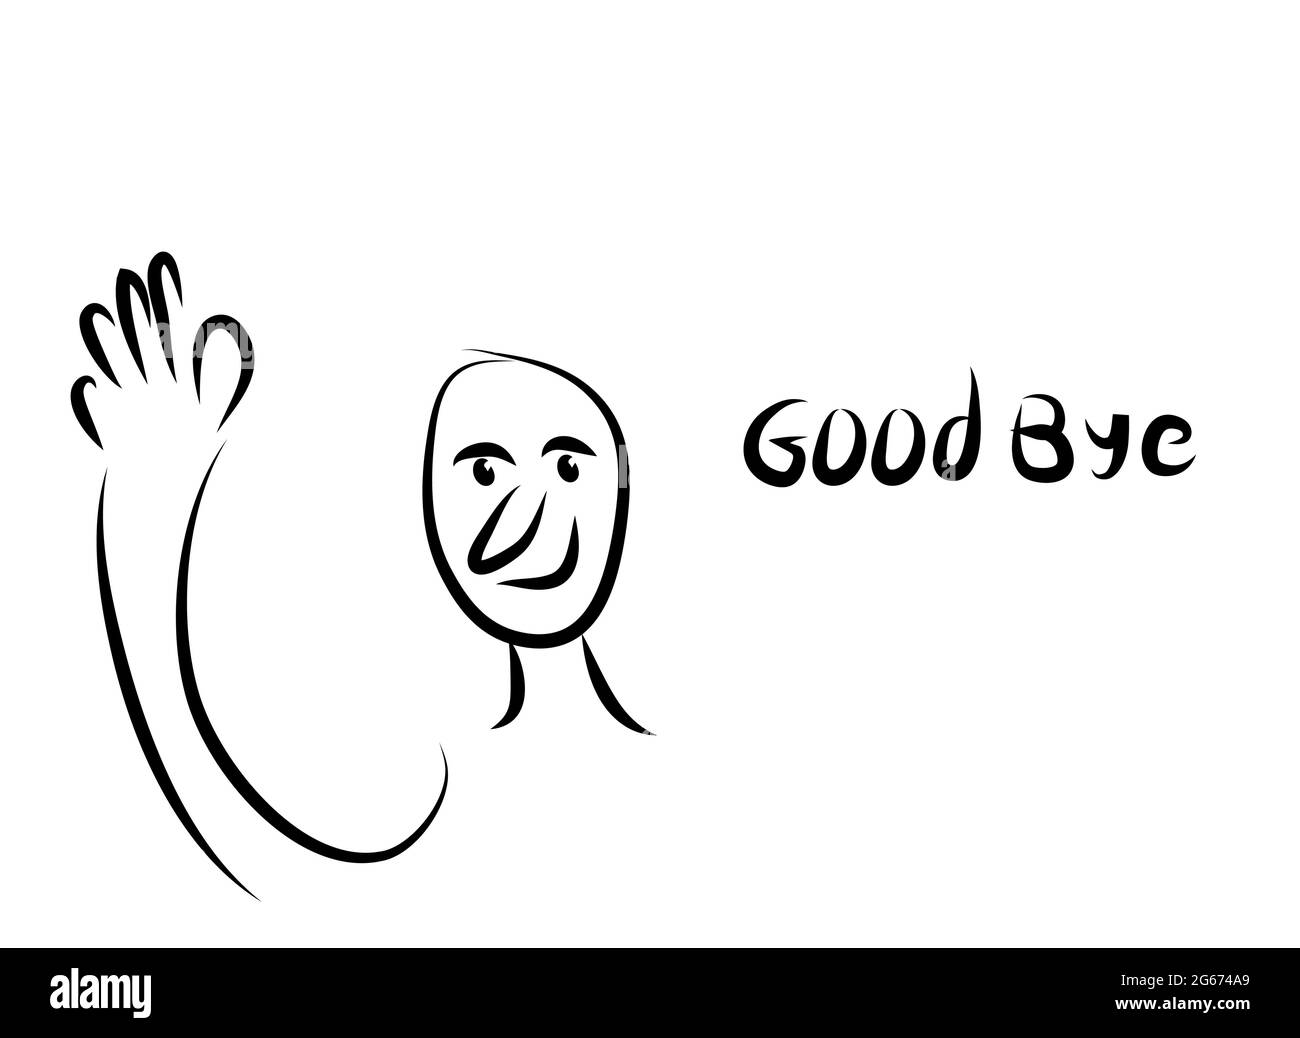 Digitale Schwarz-Weiß-Kunst des lustigen Mannes Gesicht mit der Hand sagen Abschied - Vektor-Illustration Kunst Stock Vektor